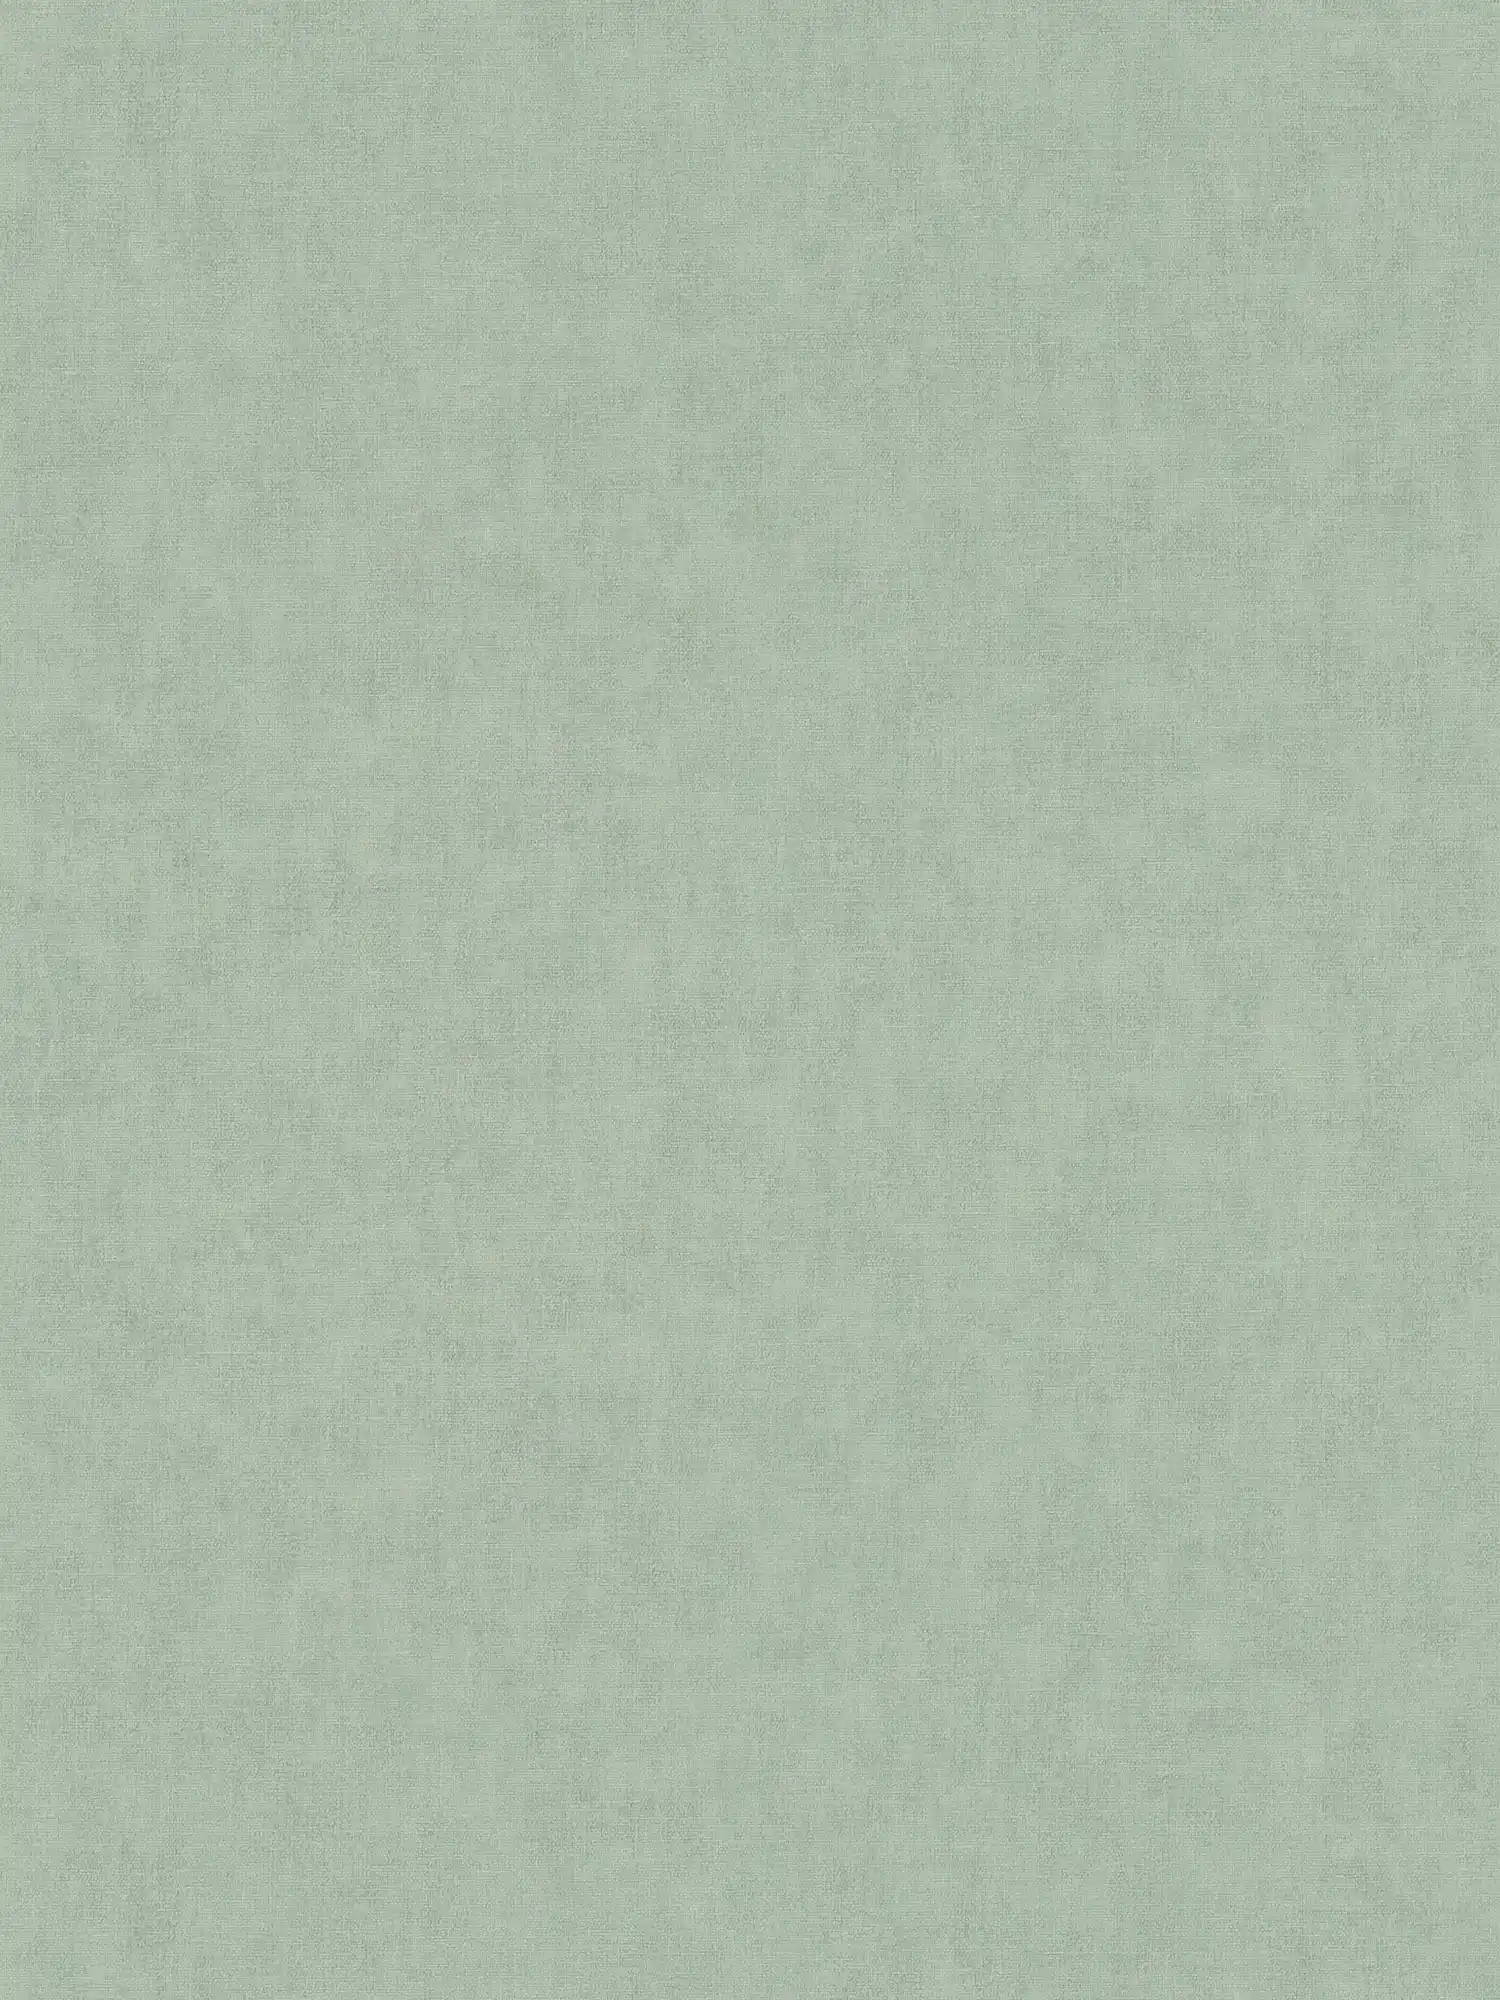 Carta da parati in tessuto non tessuto in stile scandinavo - grigio, verde
